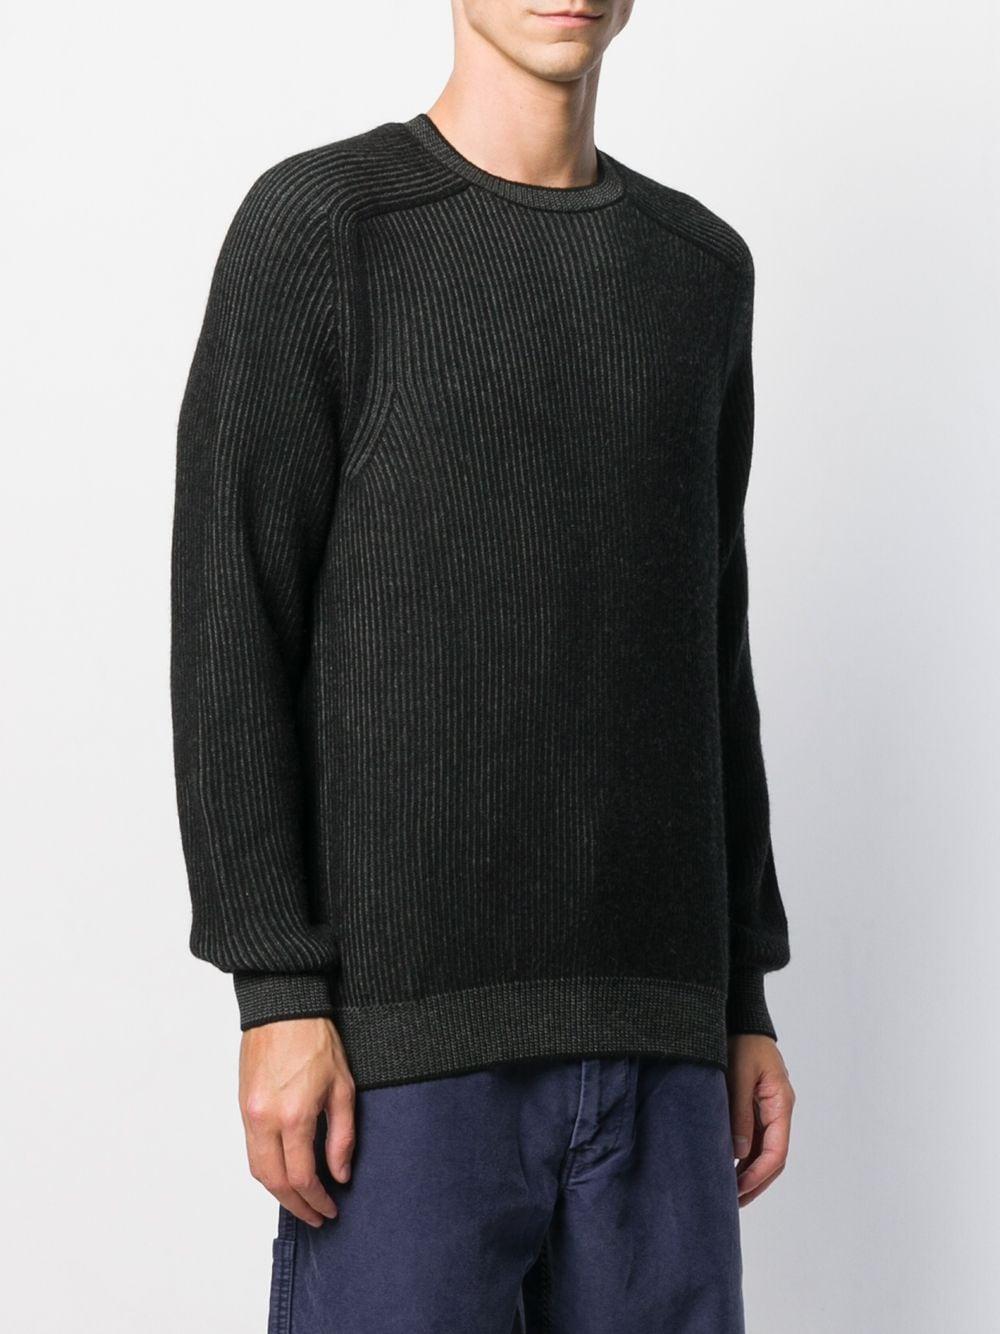 Sease Cashmere Reversible Knit Jumper in Black for Men - Lyst